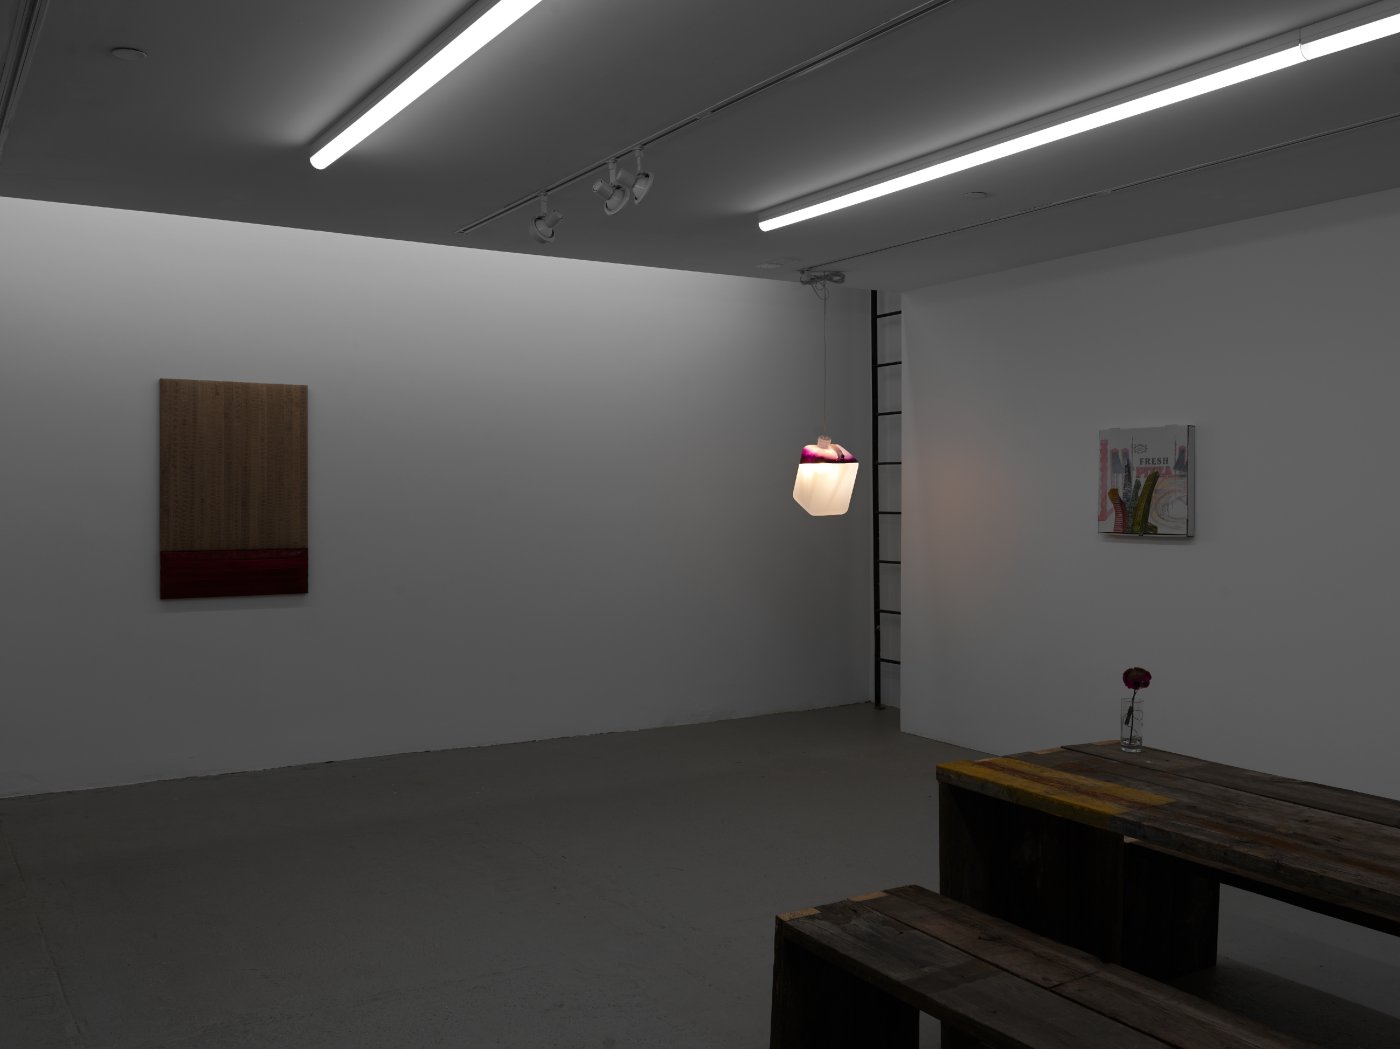 Installation image for Weiss Falk: Found Refined Refound, at Galerie Eva Presenhuber